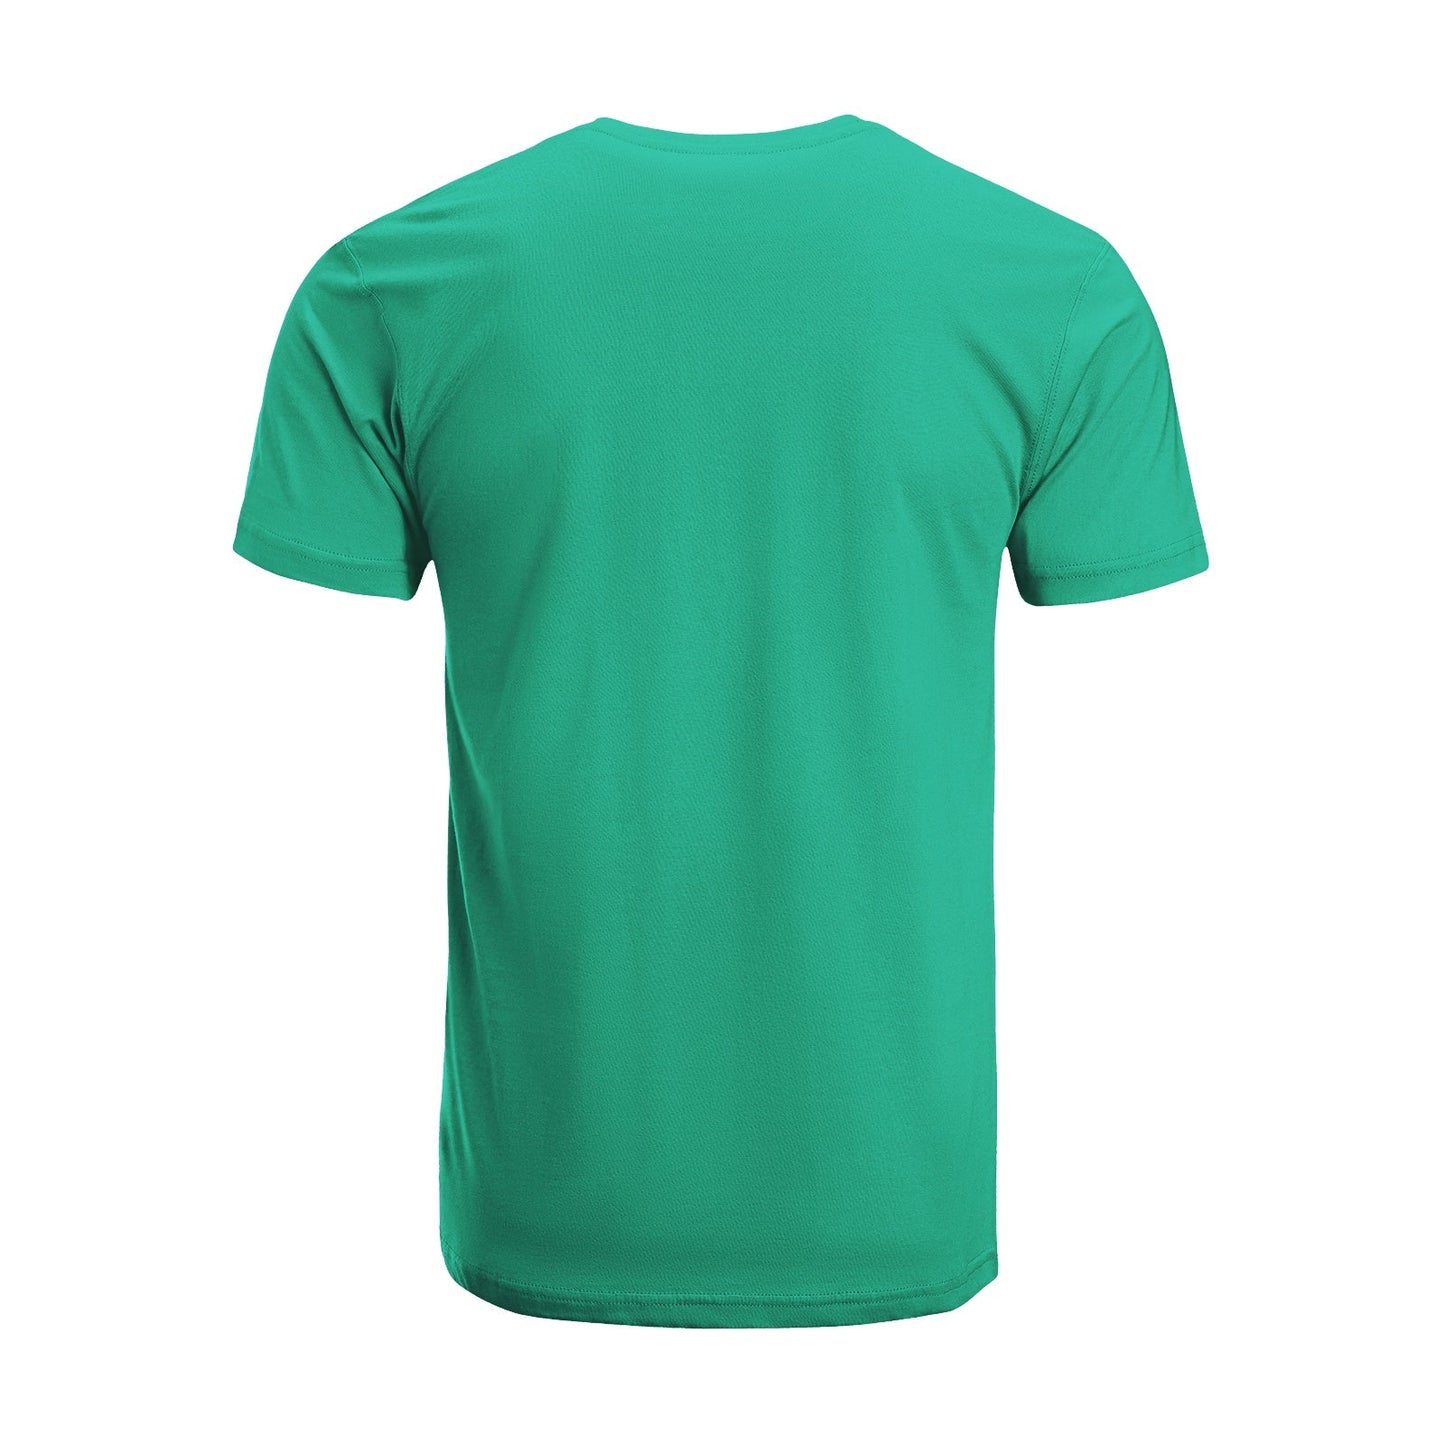 Unisex Short Sleeve Crew Neck Cotton Jersey T-Shirt TRUCK 47